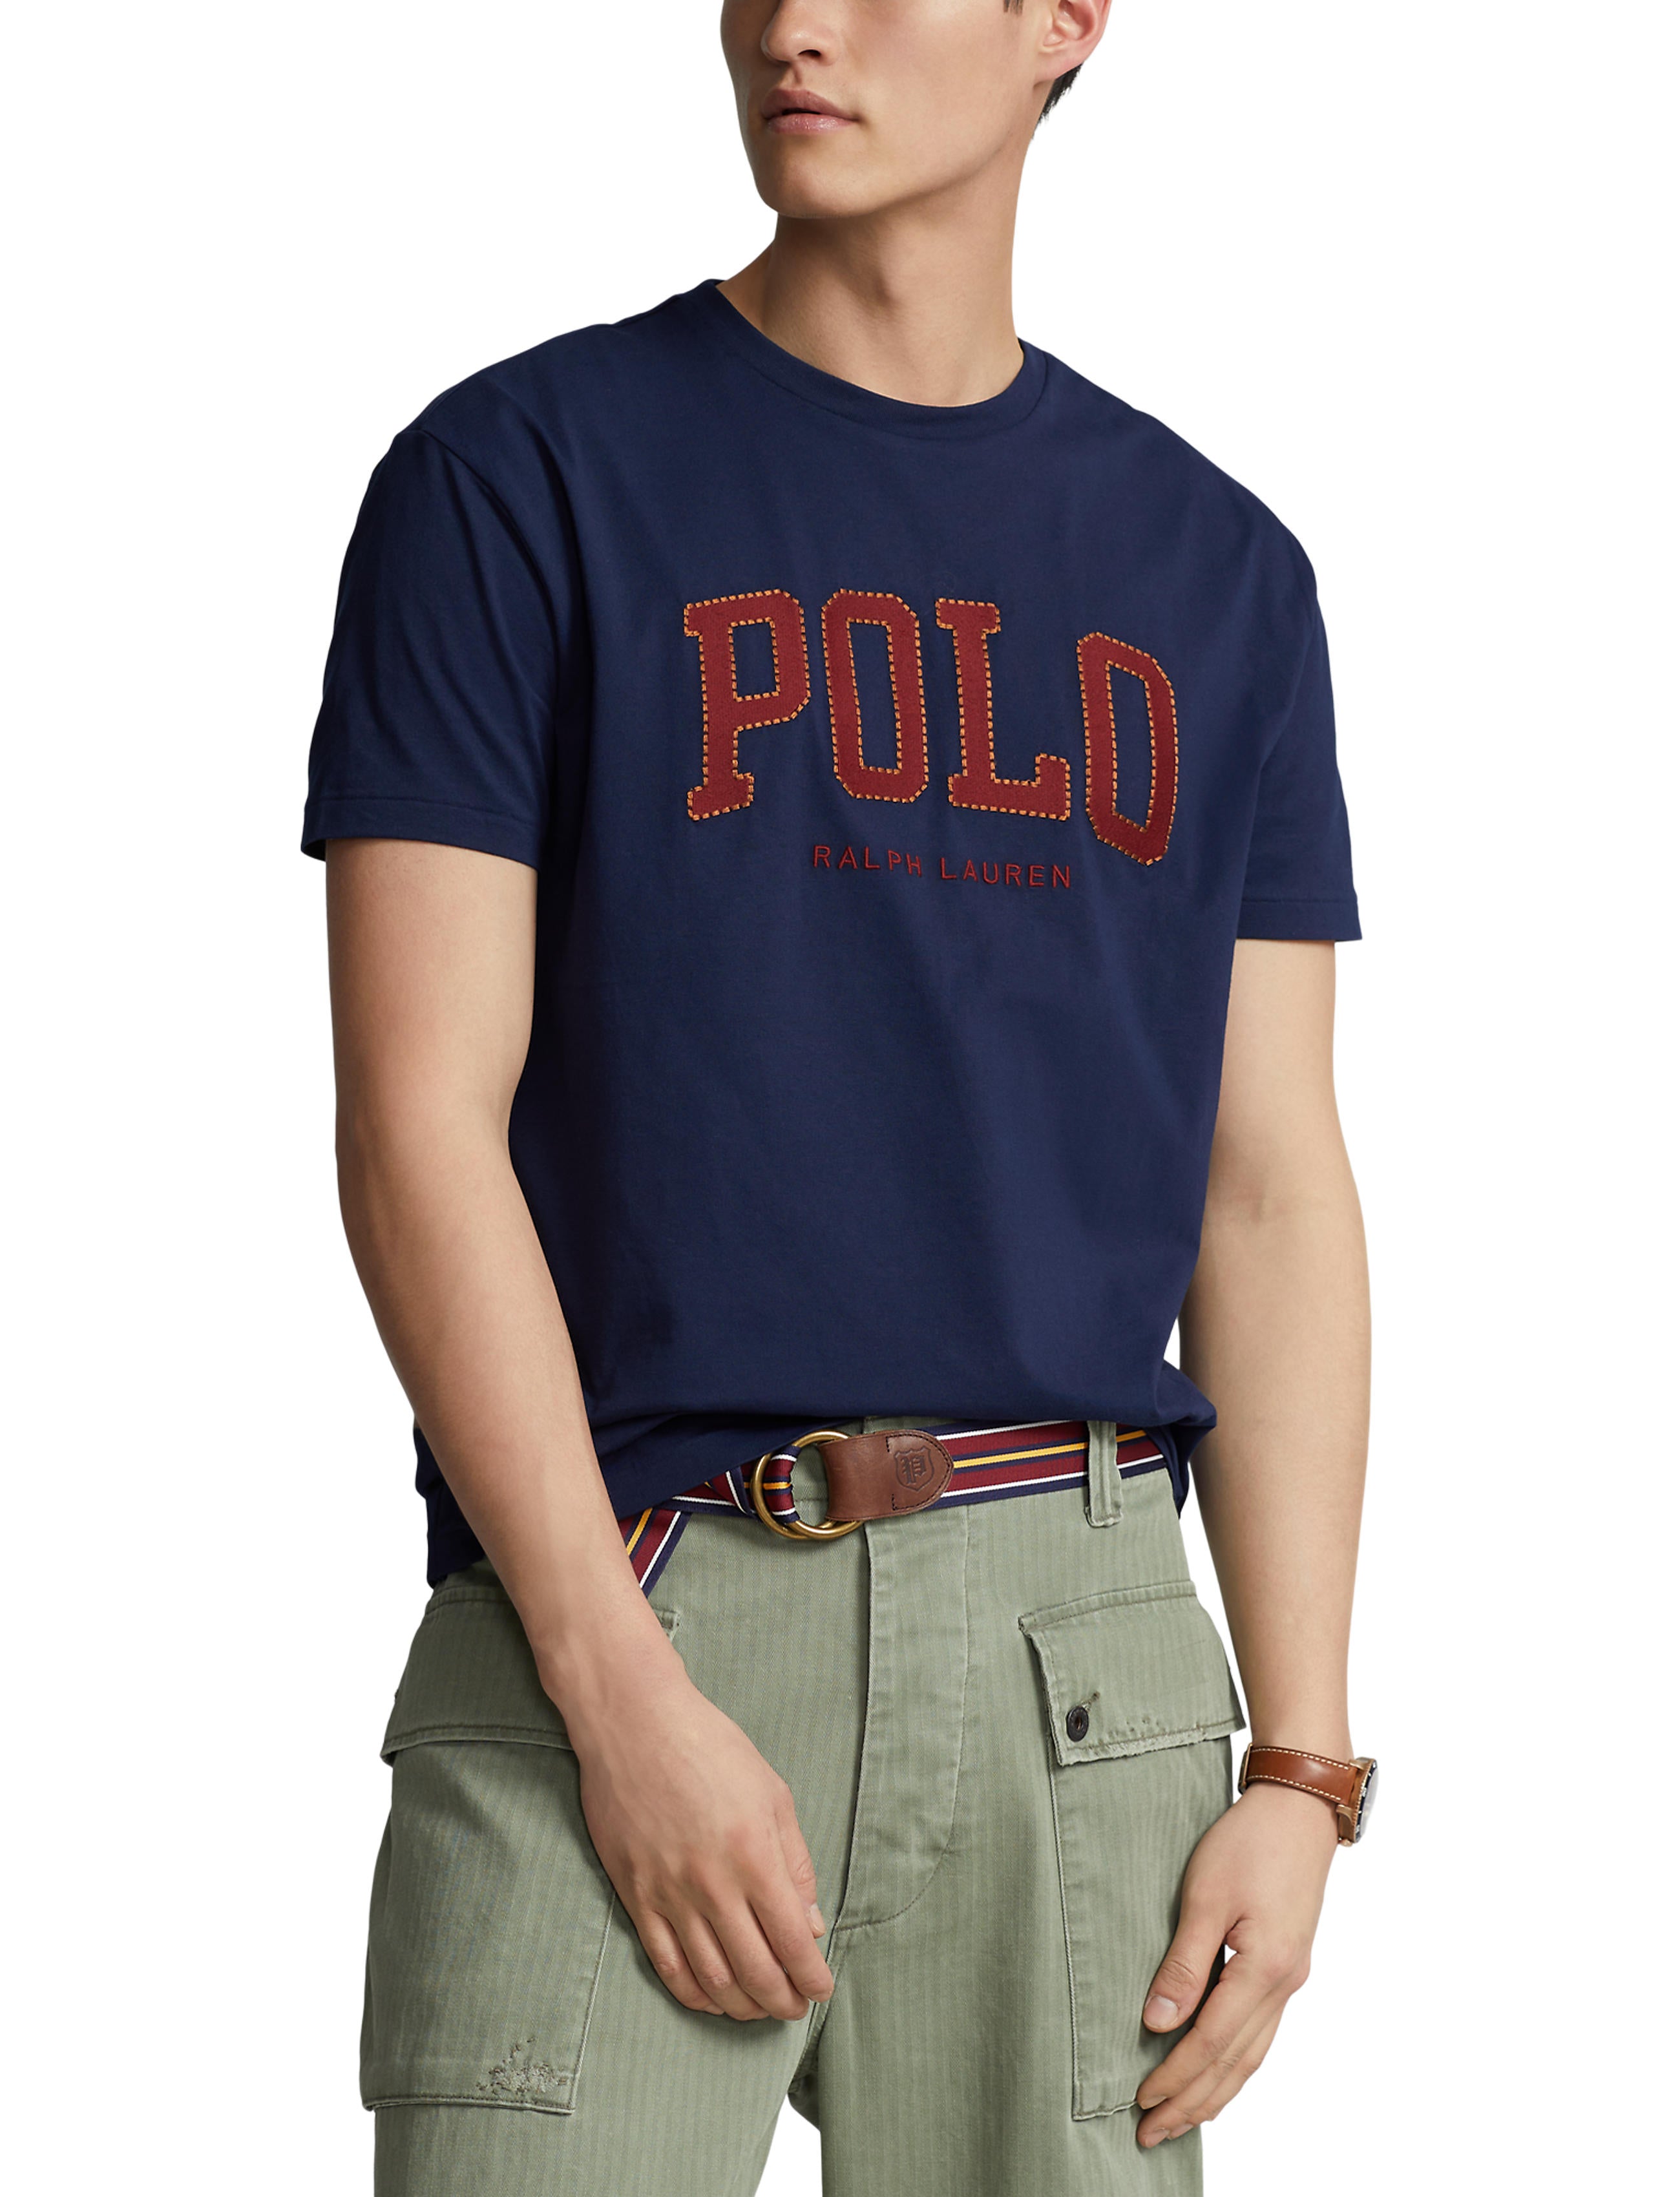 Polo Ralph Lauren Tee Shirt - Classics - Navy